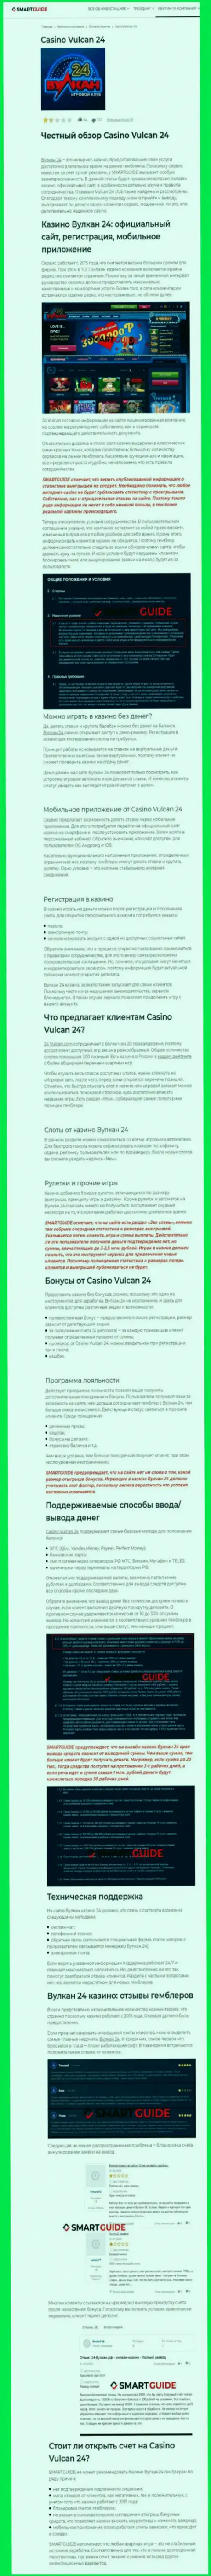 Вулкан-24 Ком - это организация, зарабатывающая на отжатии денежных вложений своих реальных клиентов (обзор мошенничества)